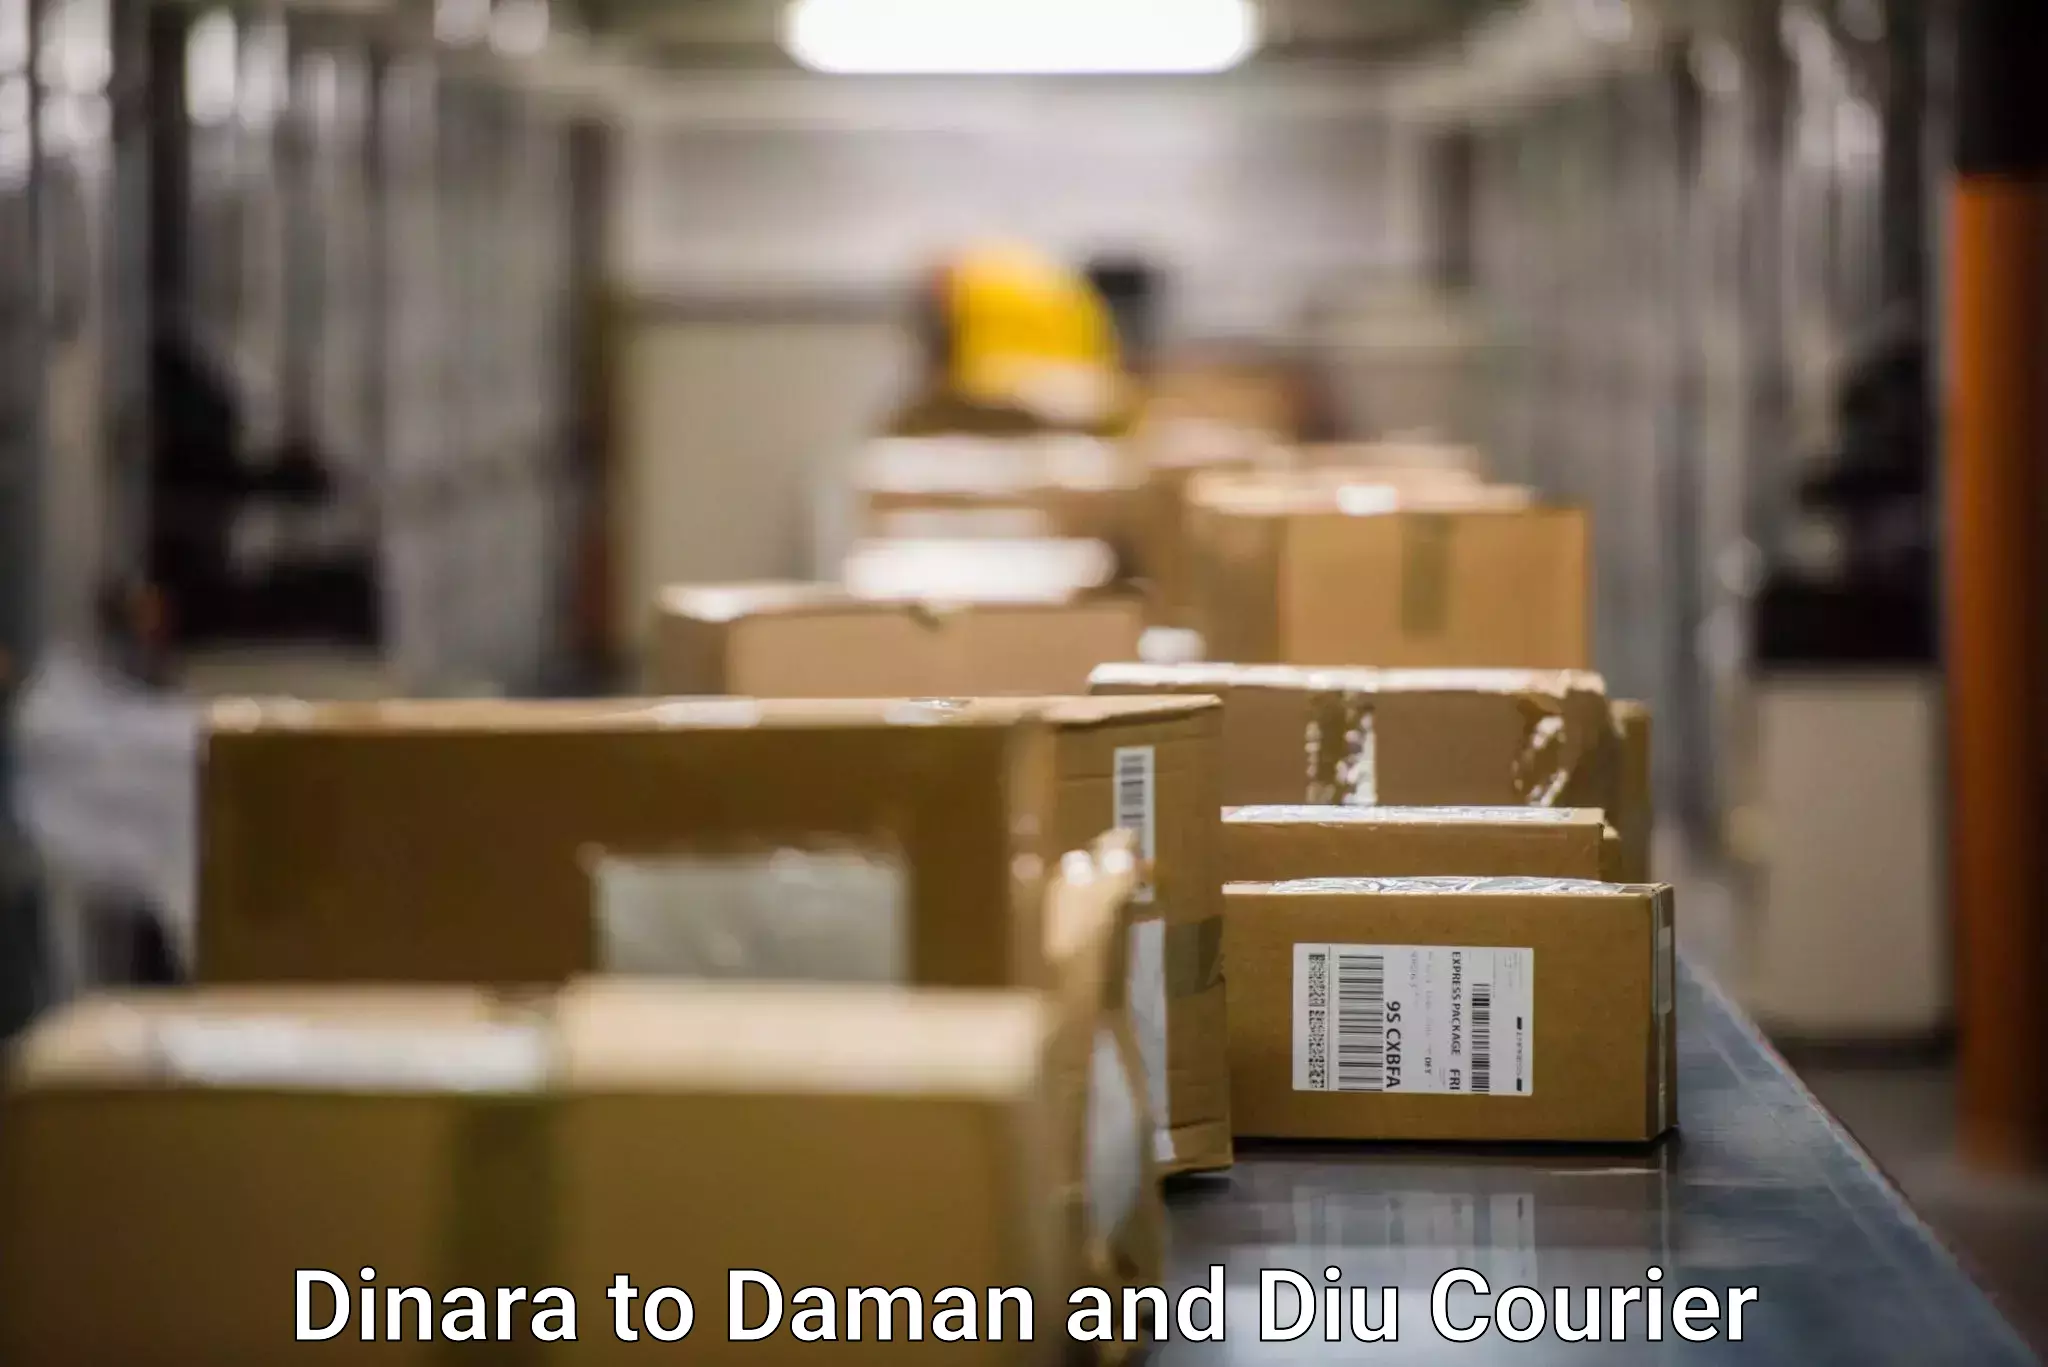 Package tracking Dinara to Daman